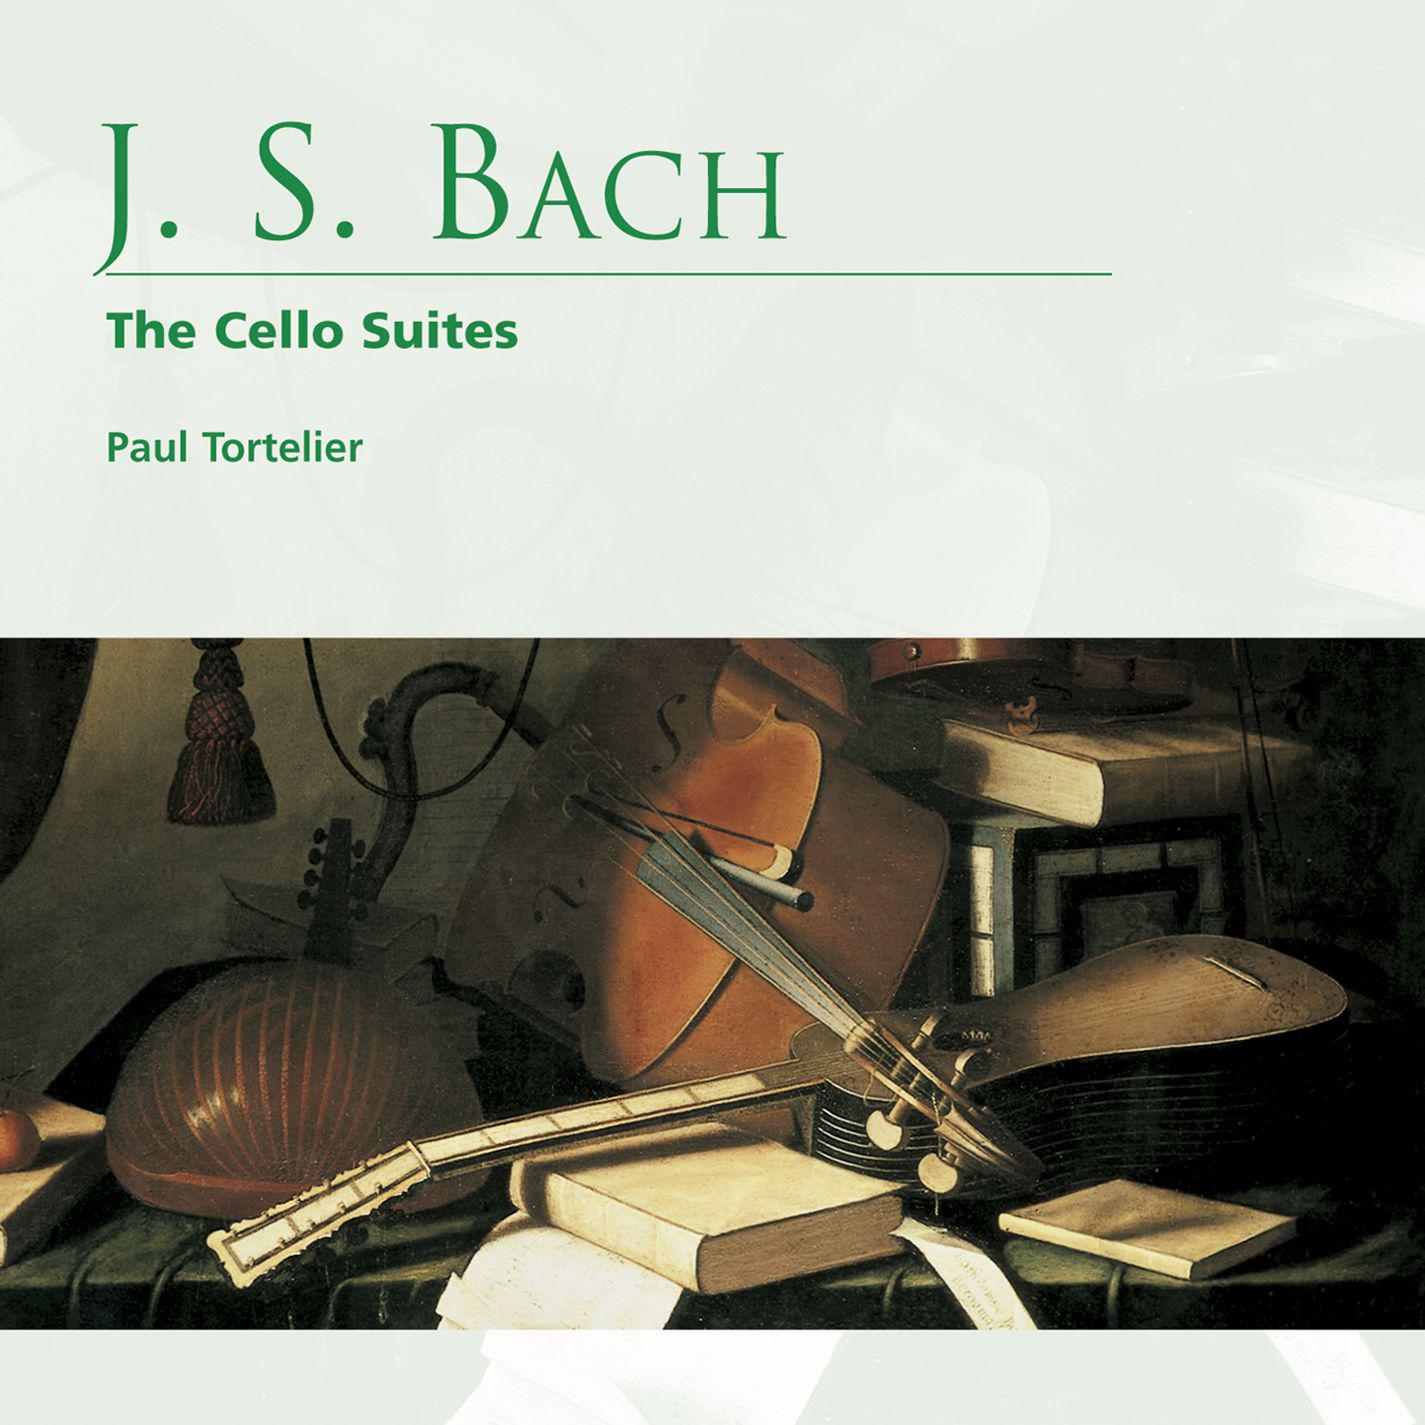 Cello Suite No. 3 in C Major, BWV 1009: VI. Bourre e II